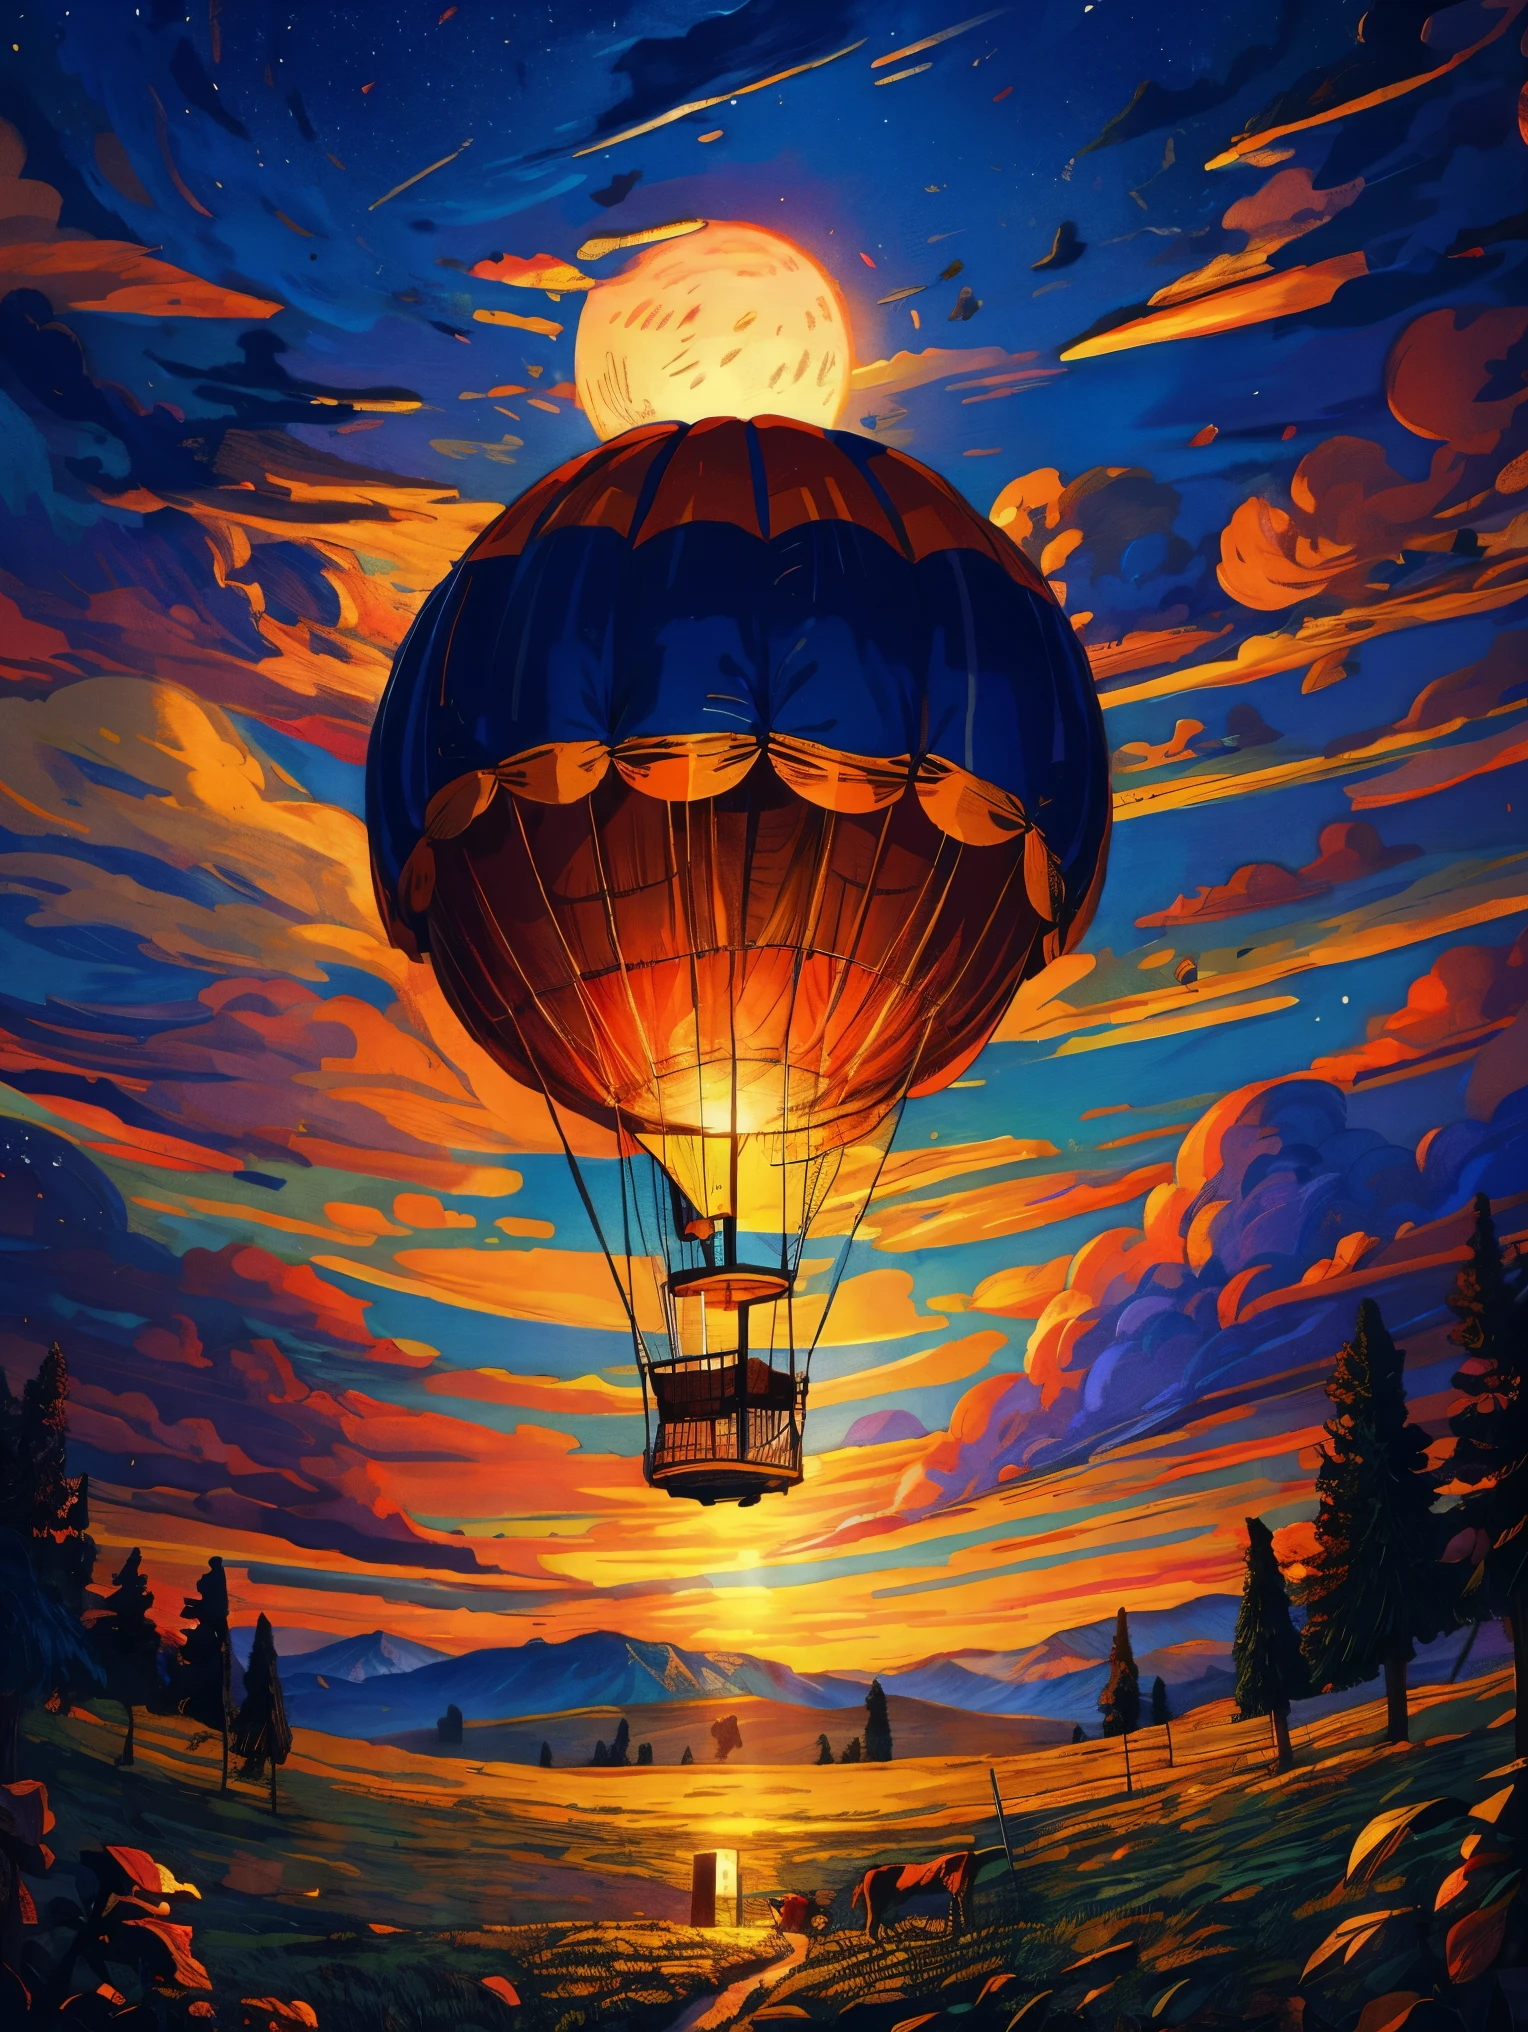 (Dibujo épico en papel) de un (grande) globo aerostático, Flujos mágicos románticos, noche estrellada iluminada por la luna, castillo gótico, montañas